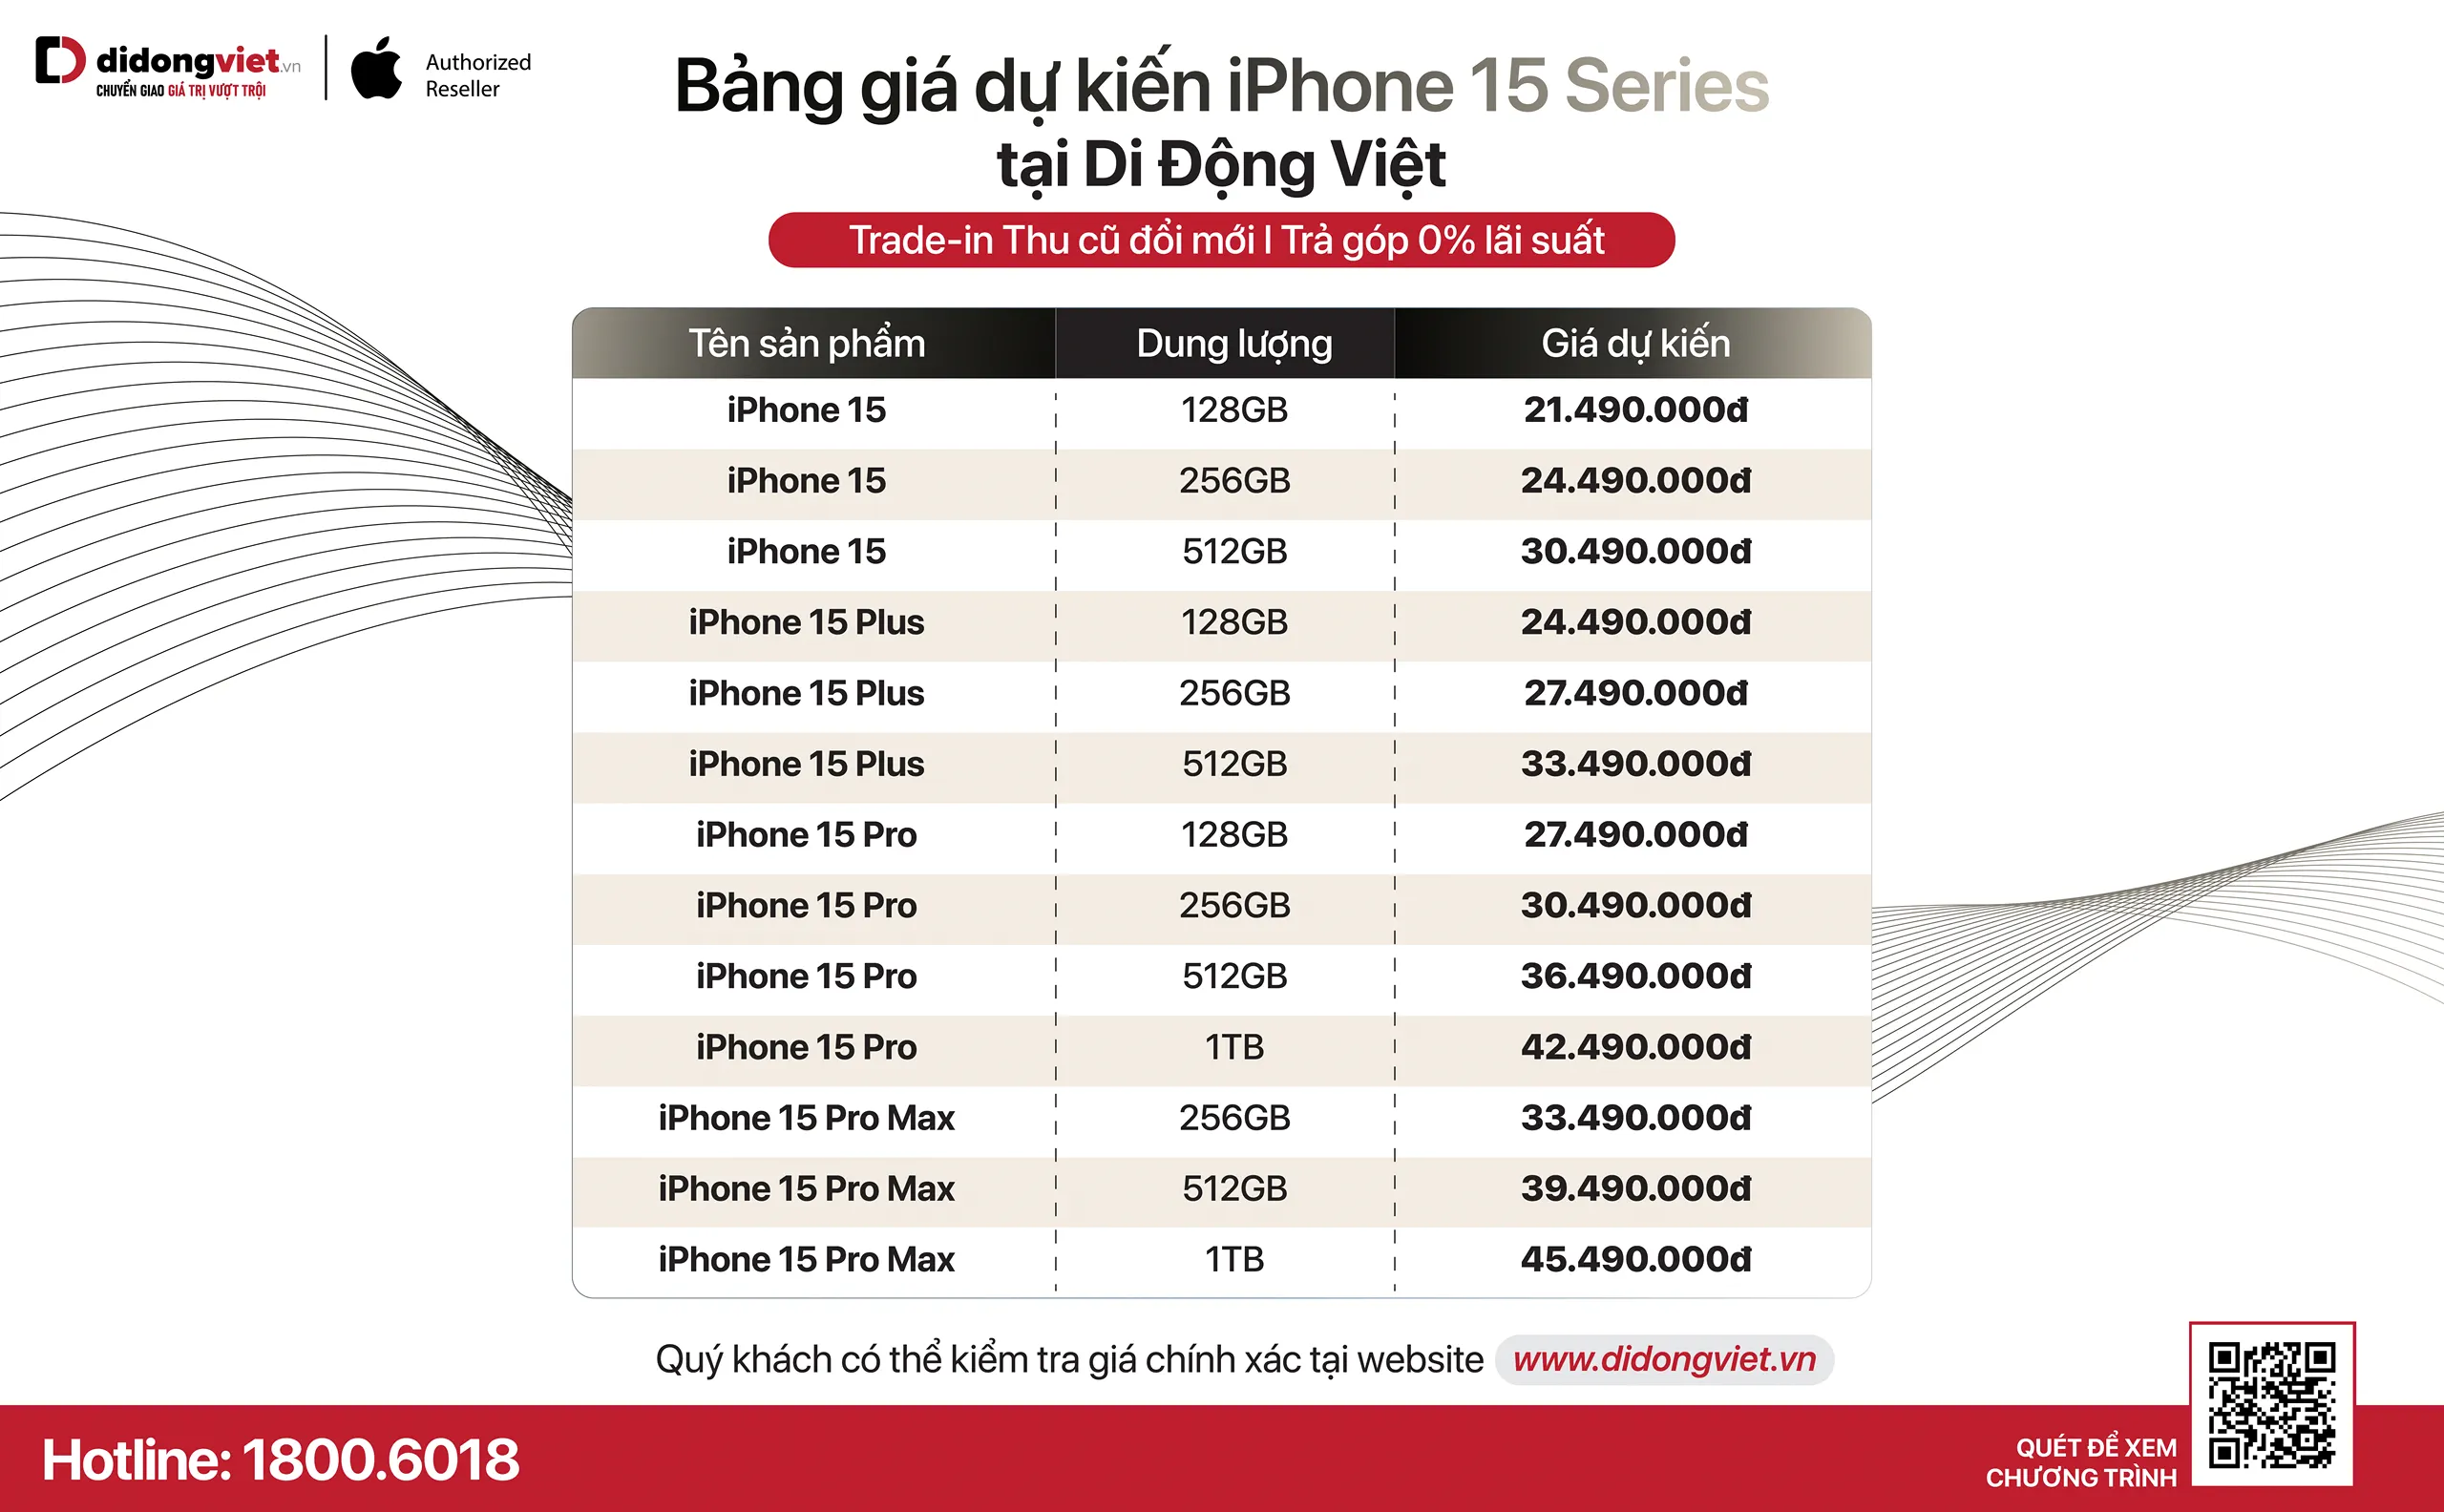 iPhone 15 series chính hãng tại Việt Nam giá dự kiến từ 21.49 triệu đồng, mở bán sớm hơn tại Di Động Việt